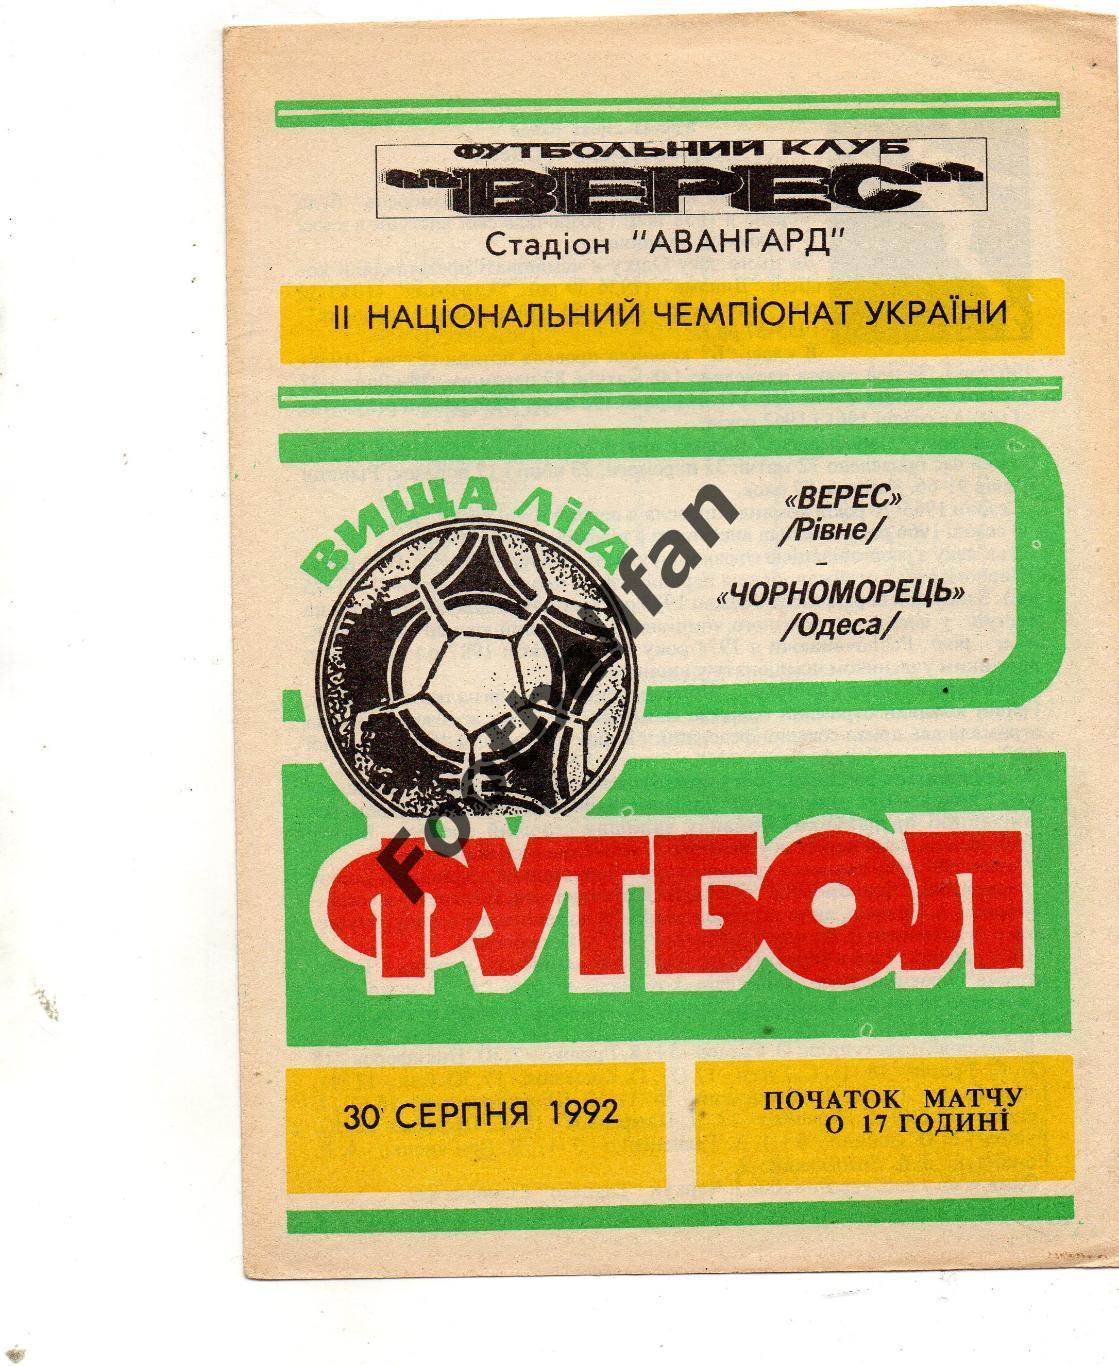 Верес Ровно - Черноморец Одесса 30.08.1992